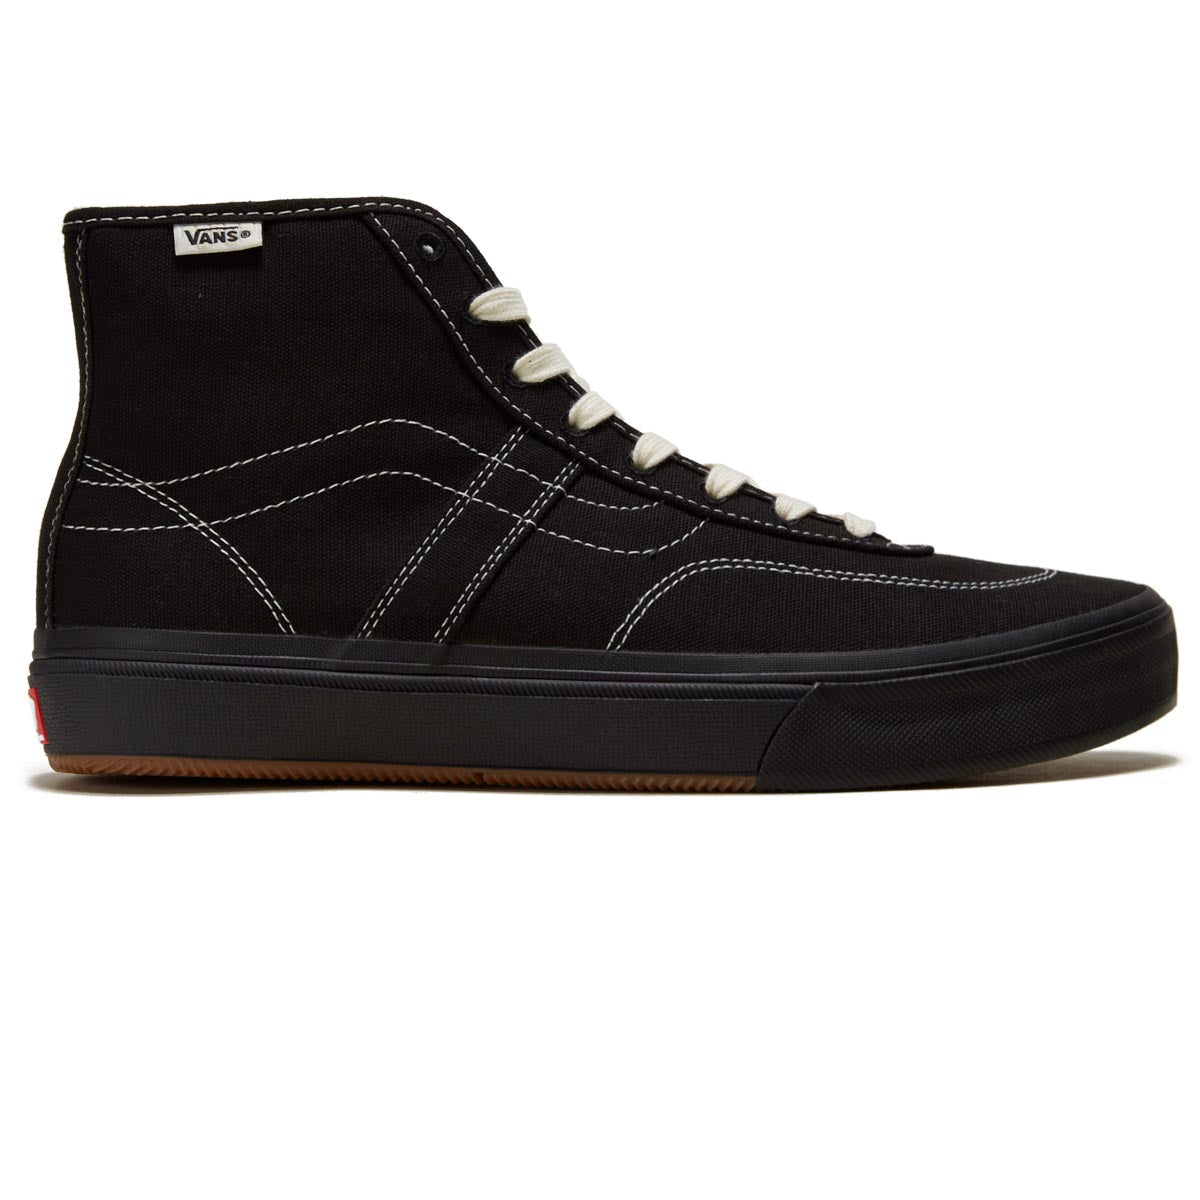 Vans Crockett High Decon Shoes - Canvas Black/Black/White image 1